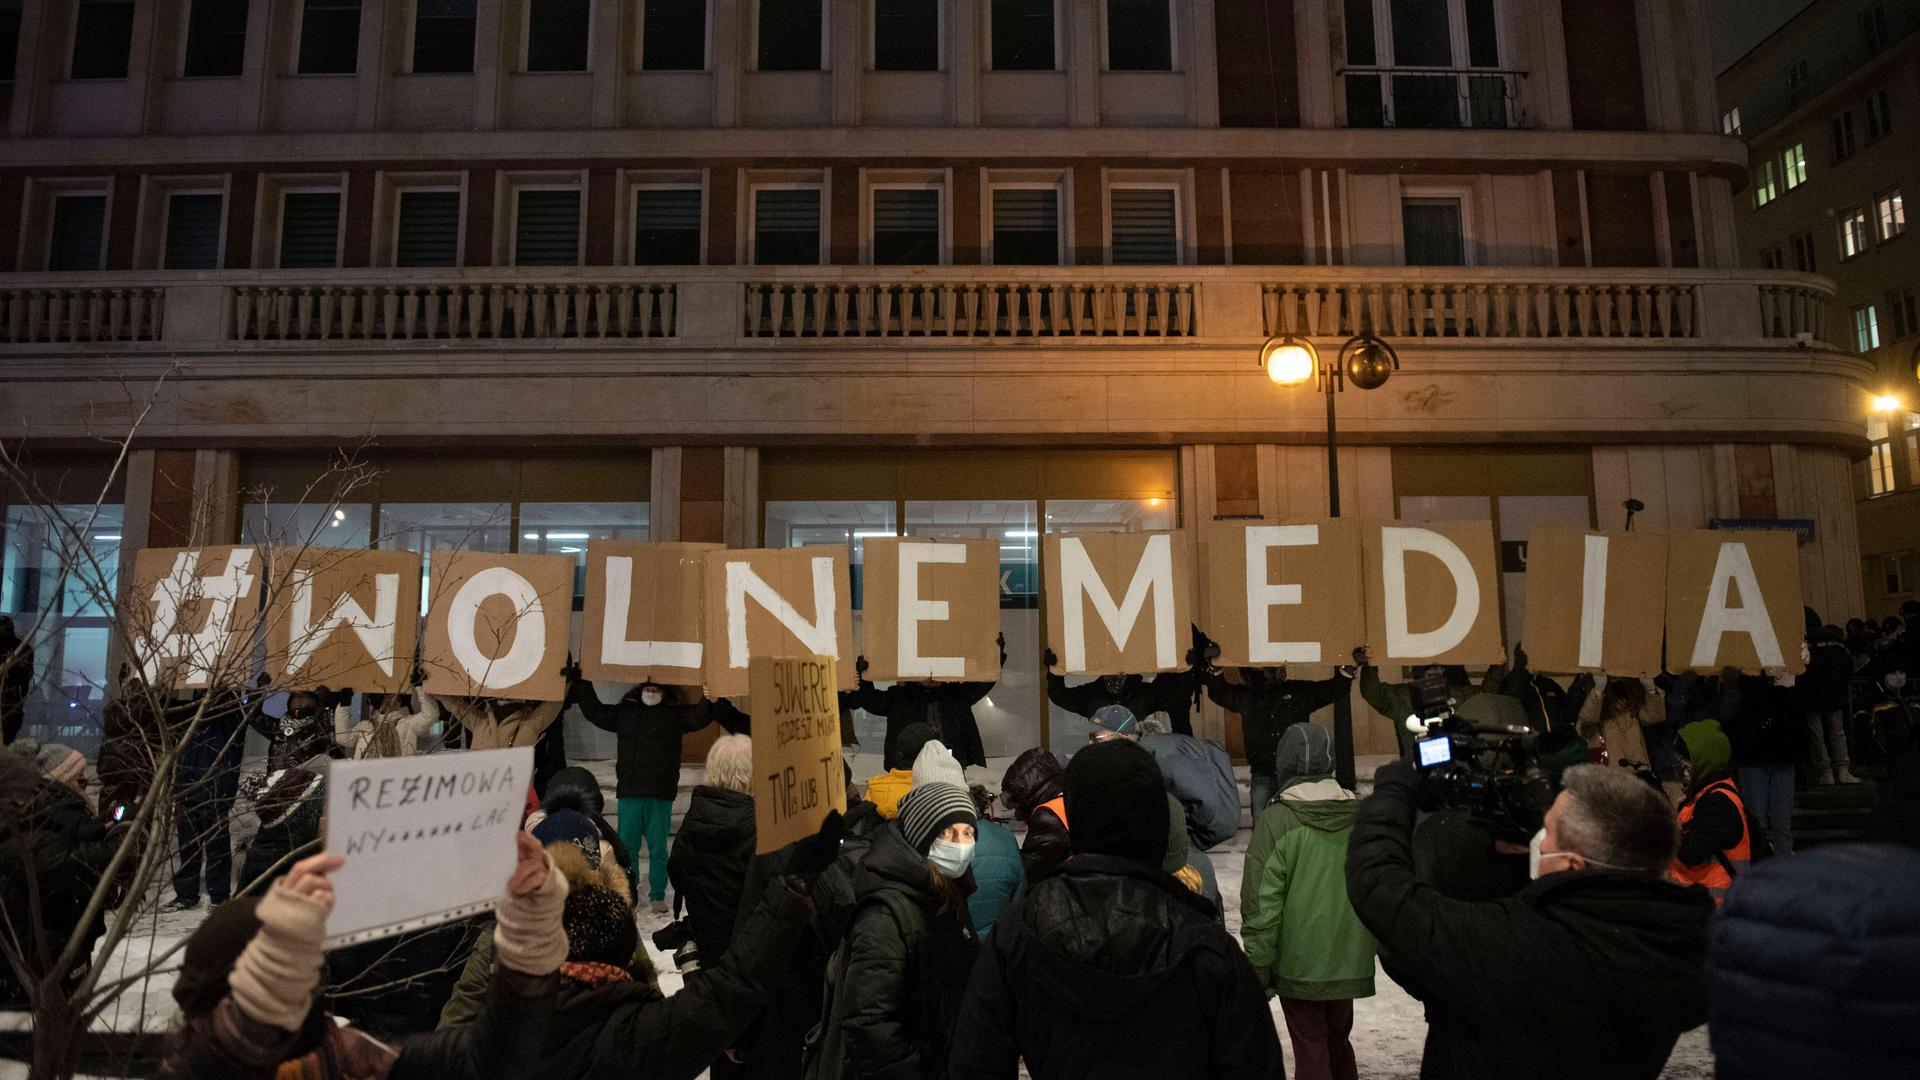 Demonstranten in Warschau halten am 10.02.2021 Buchstaben-Banner hoch, die die Worte "Wolne Media" bilden: "Freie Medien".